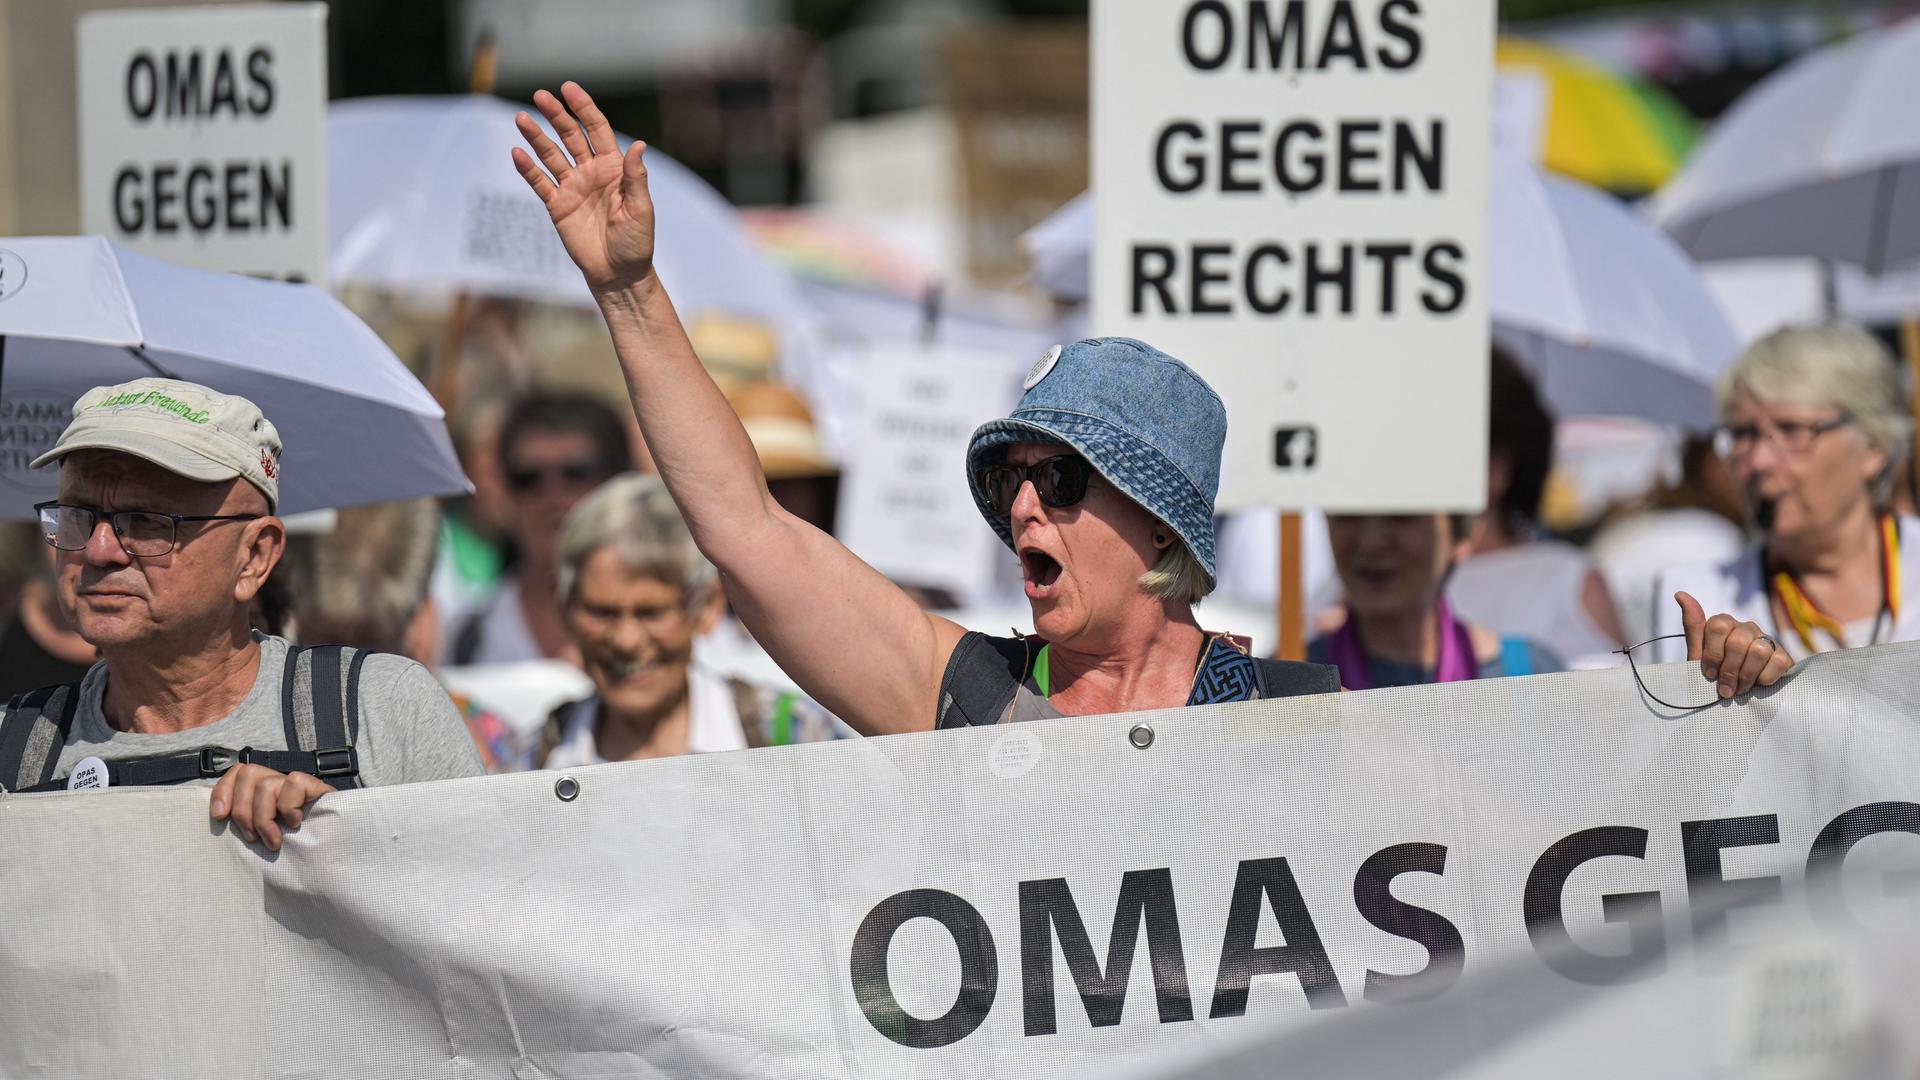 Demonstrationsteilnehmer halten Transparente mit der Aufschrift "Omas gegen rechts". Eine Frau hebt die Hand und ruft etwas.